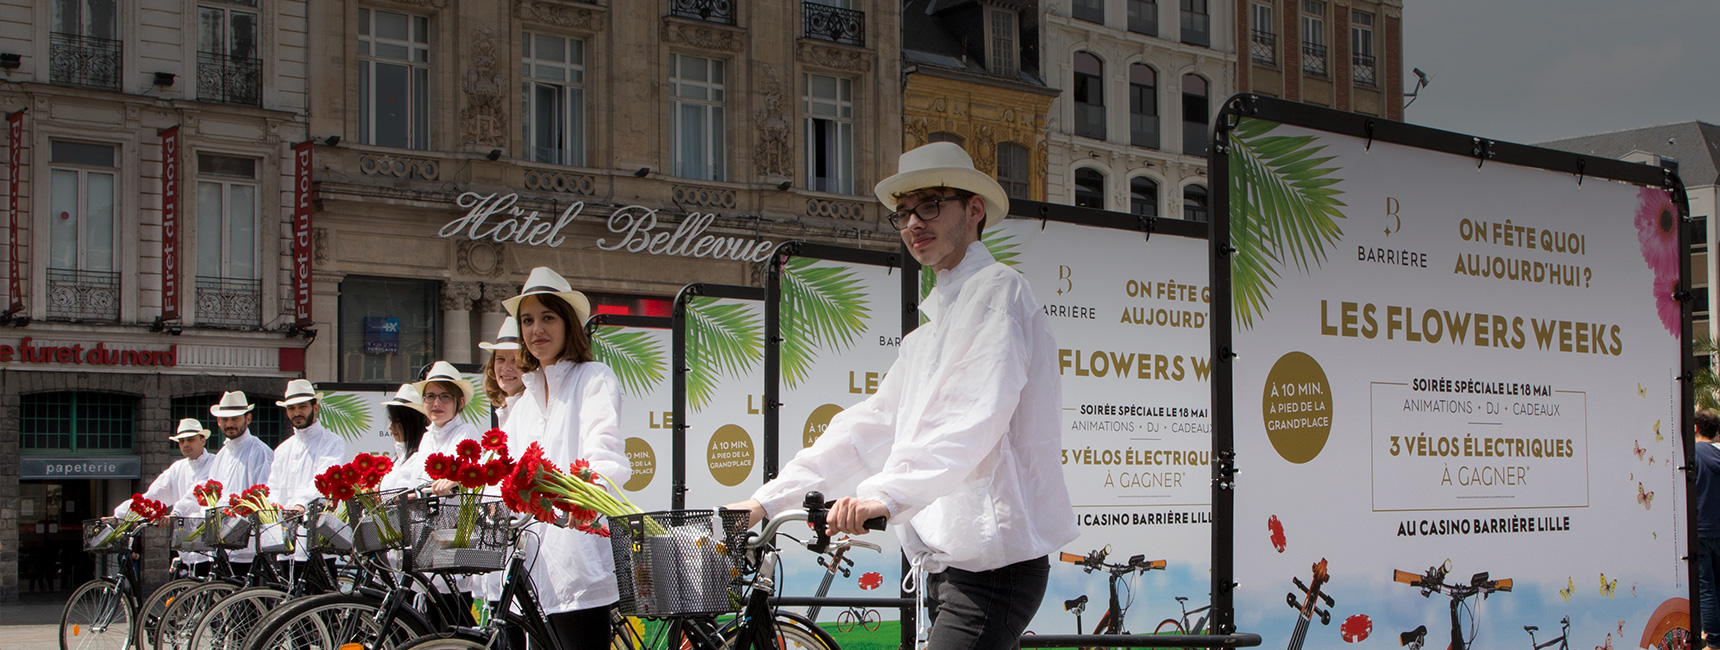 Le Casino Barriere de Lille crée l'évènement avec des Bike'com pendant les flowers weeks mobile - Keemia Shopper Marketing - Agence d'activation shopper marketing phygitale